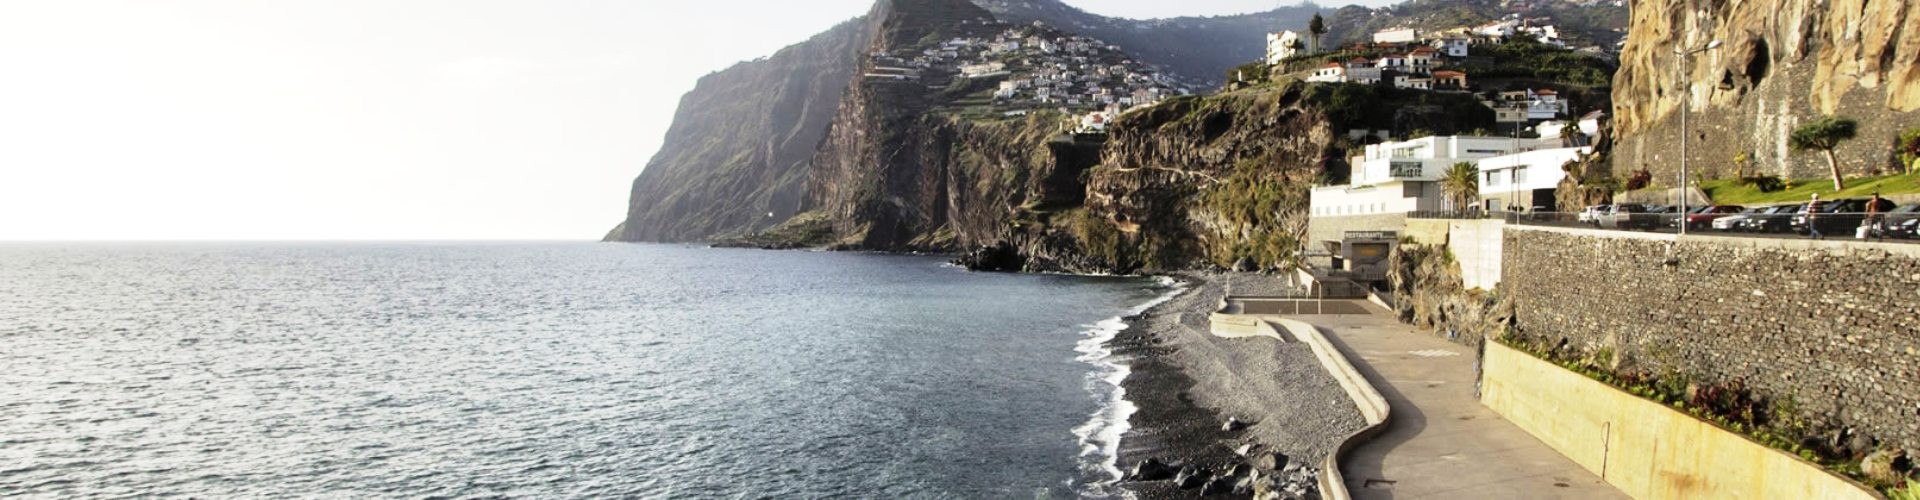 Vigário Beach, Camara de Lobos, Madeira